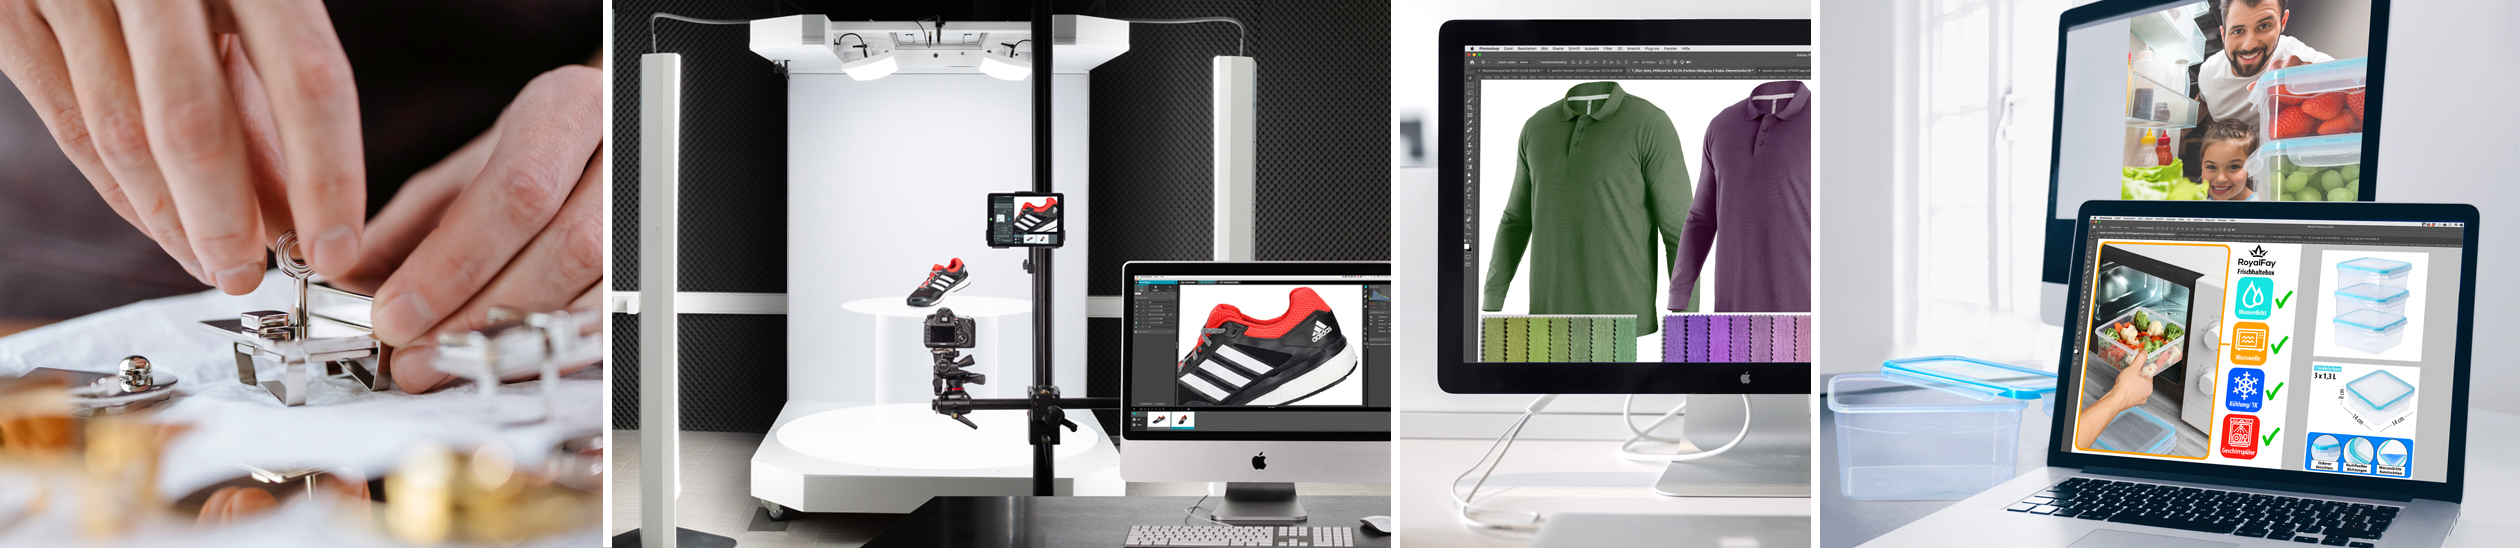 Produktvorbereitung | Automatisierte Fotografie | Farbabszimmung in der Bidldbearbeitung | Gestaltung von Amazon Fotos